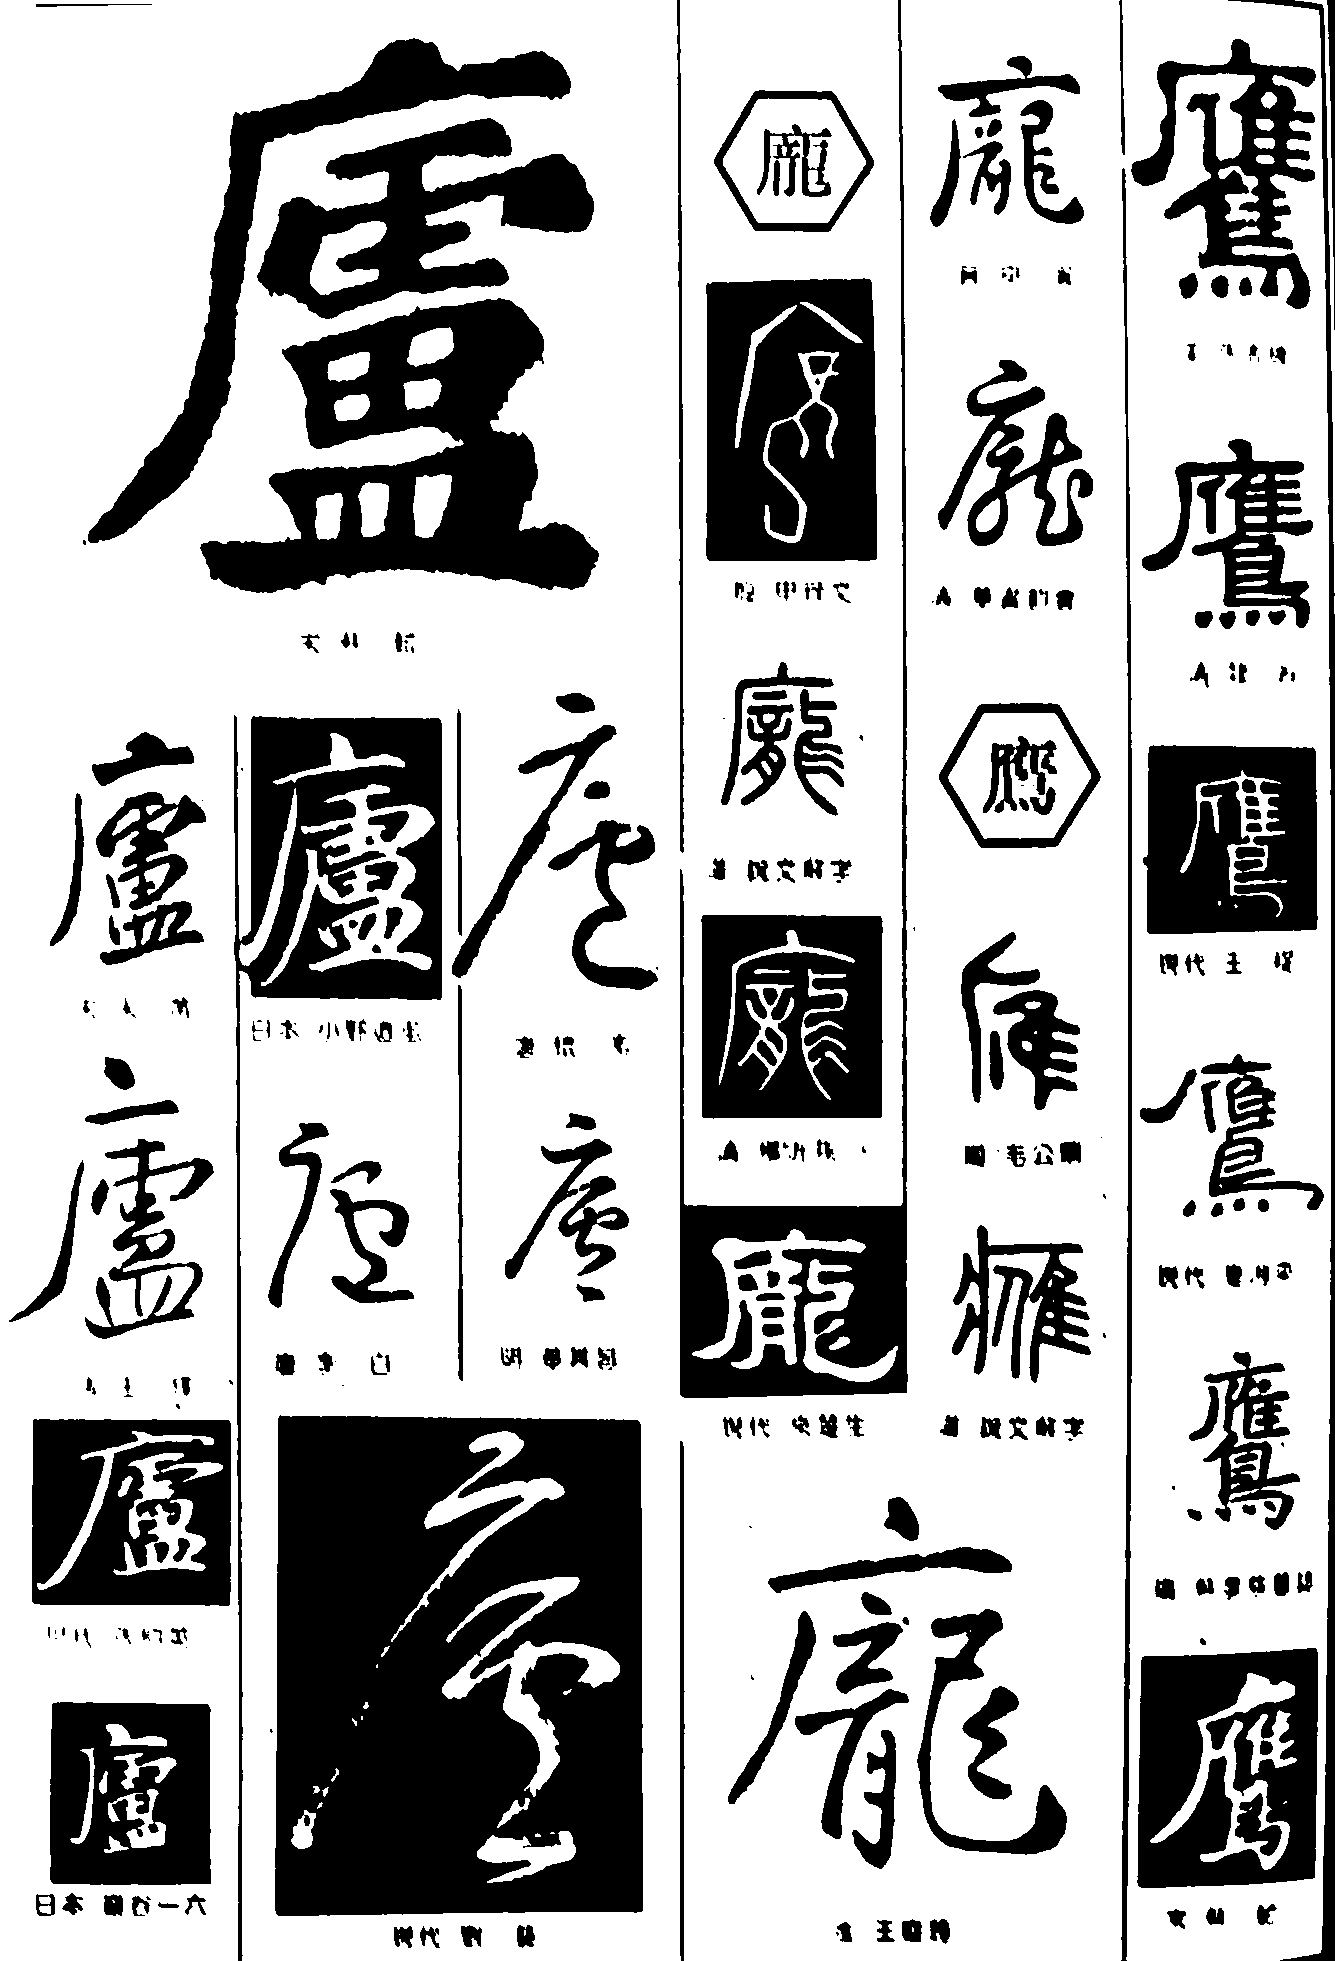 庞鹰 艺术字 毛笔字 书法字 繁体 标志设计 